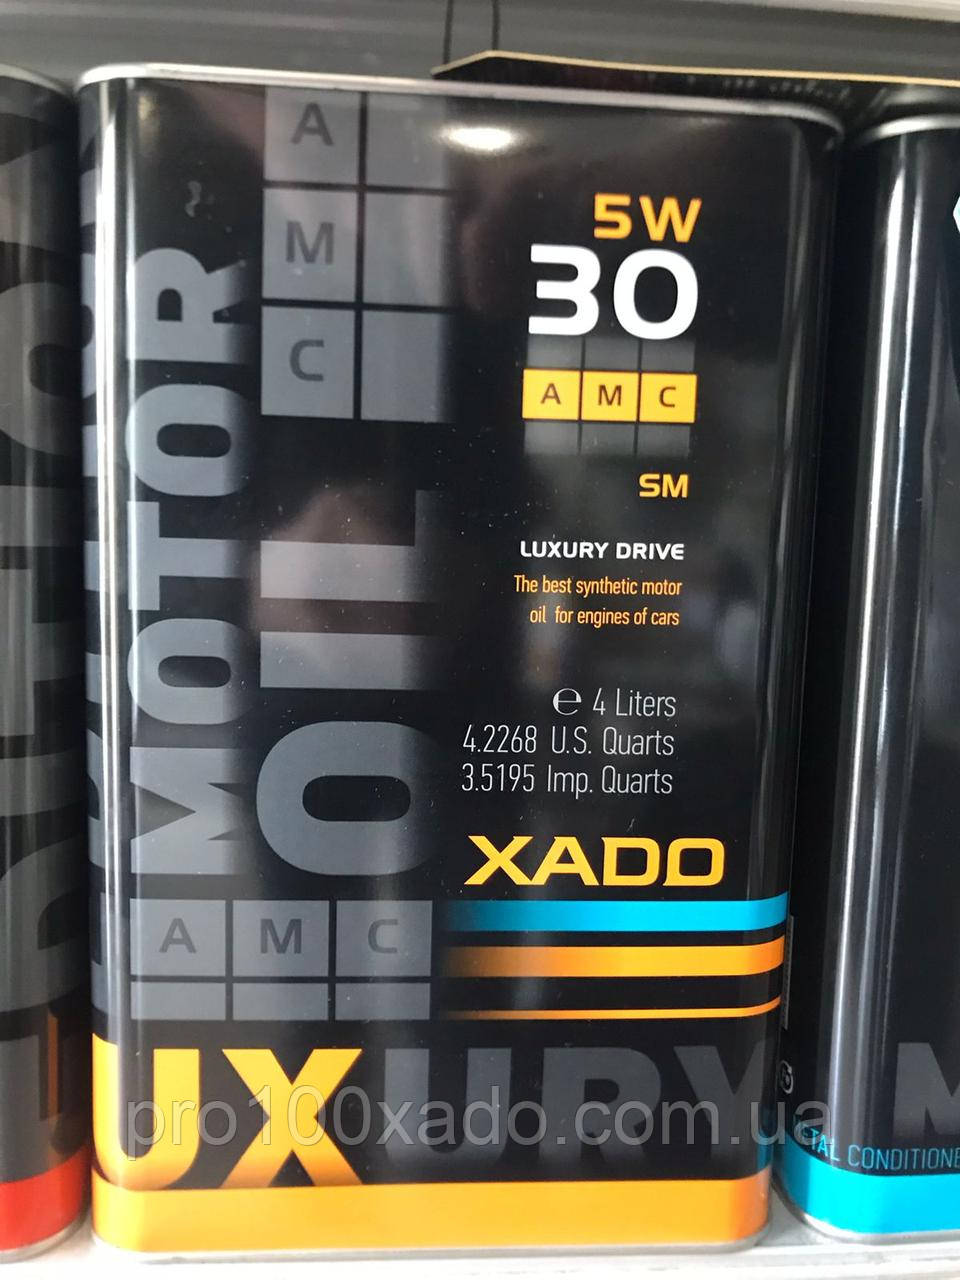 Xado 5W-30 C23 АМС black edition    (ж/б  4 л)